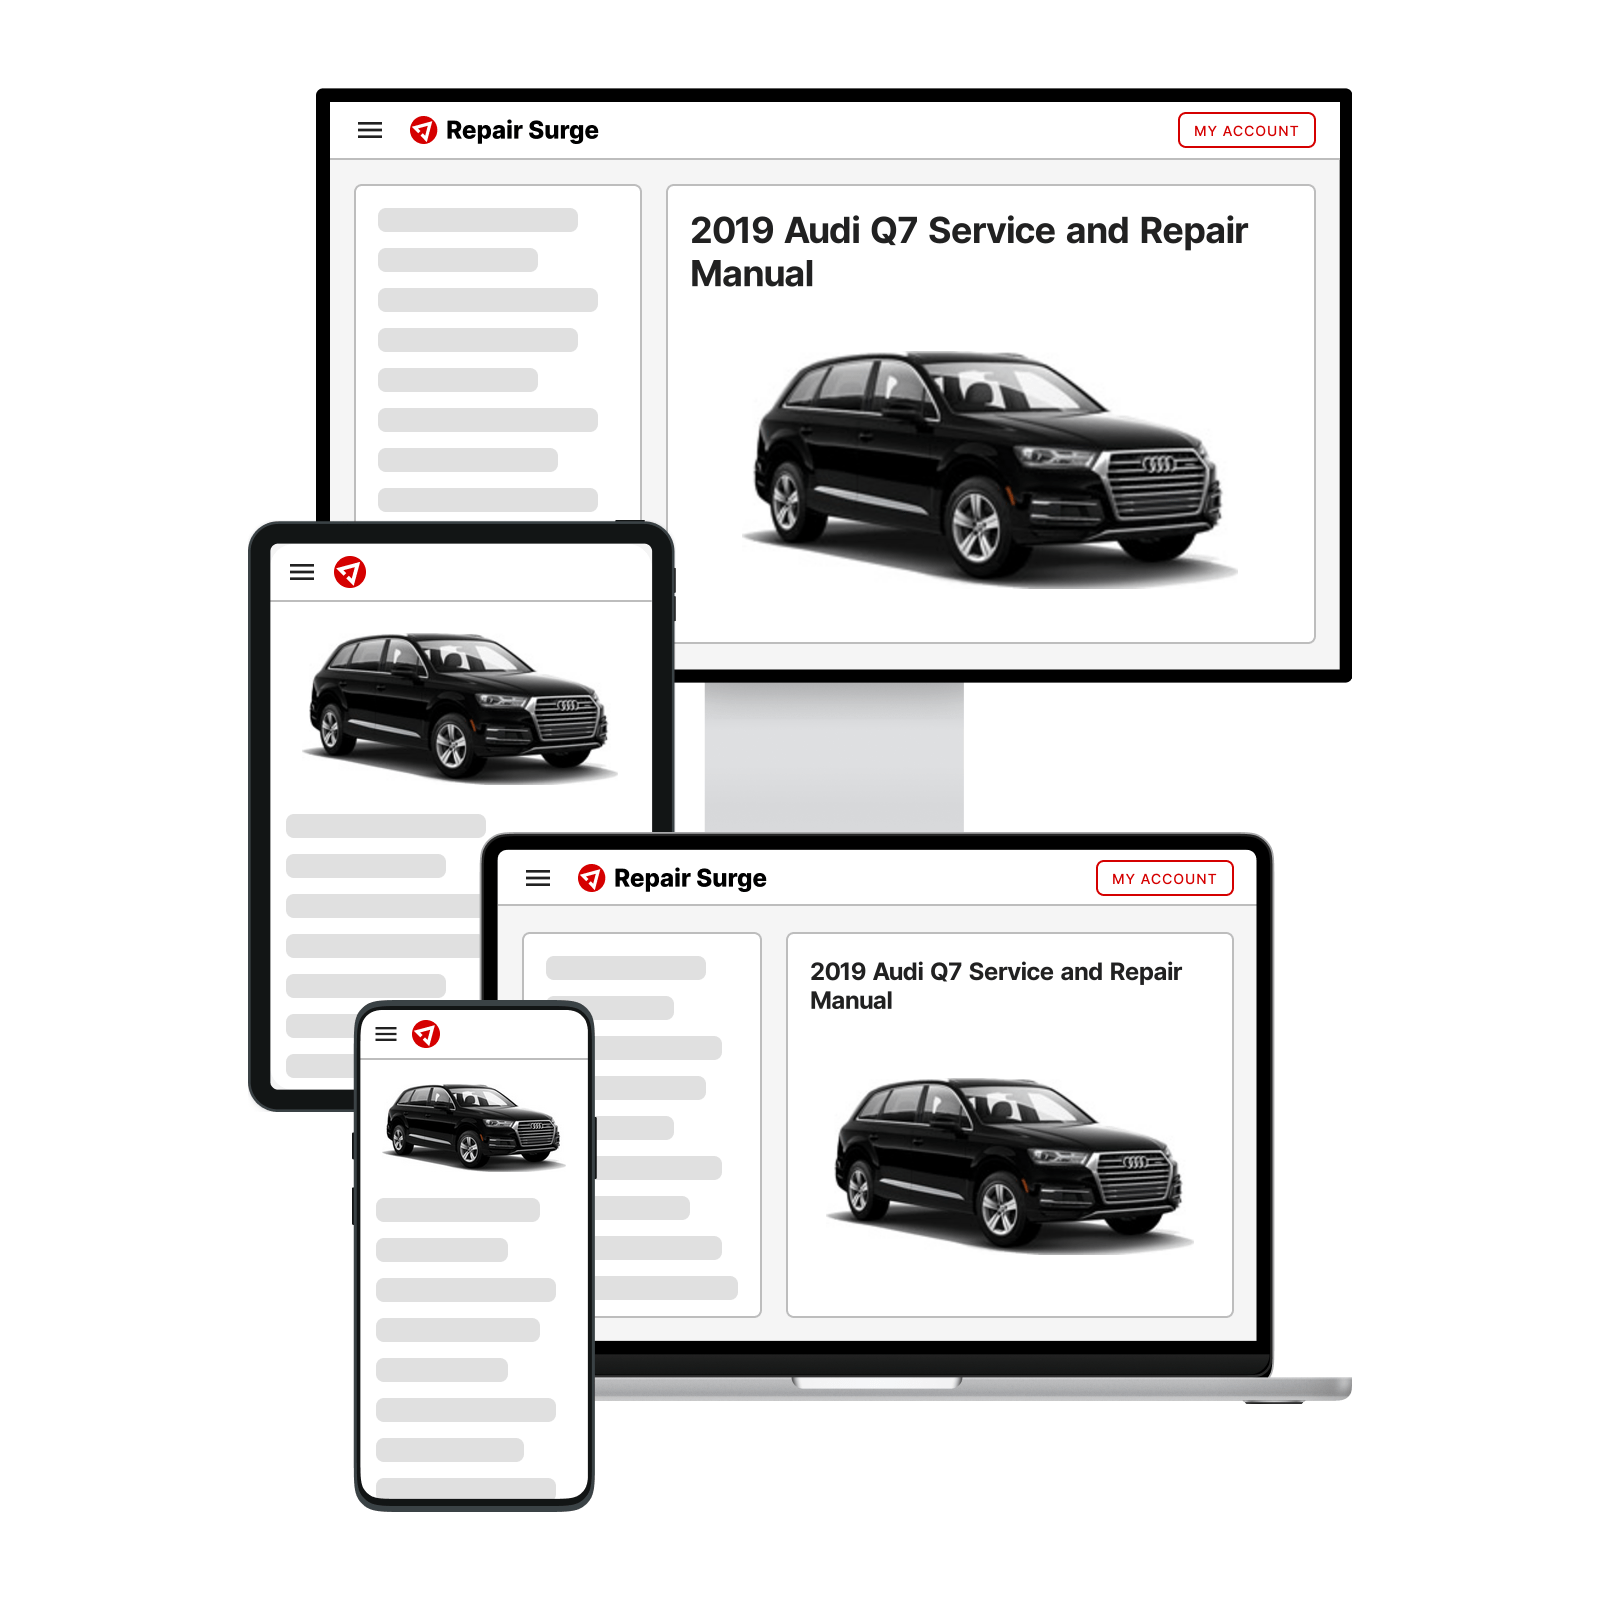 2019 Audi Q7 service and repair manual hero image